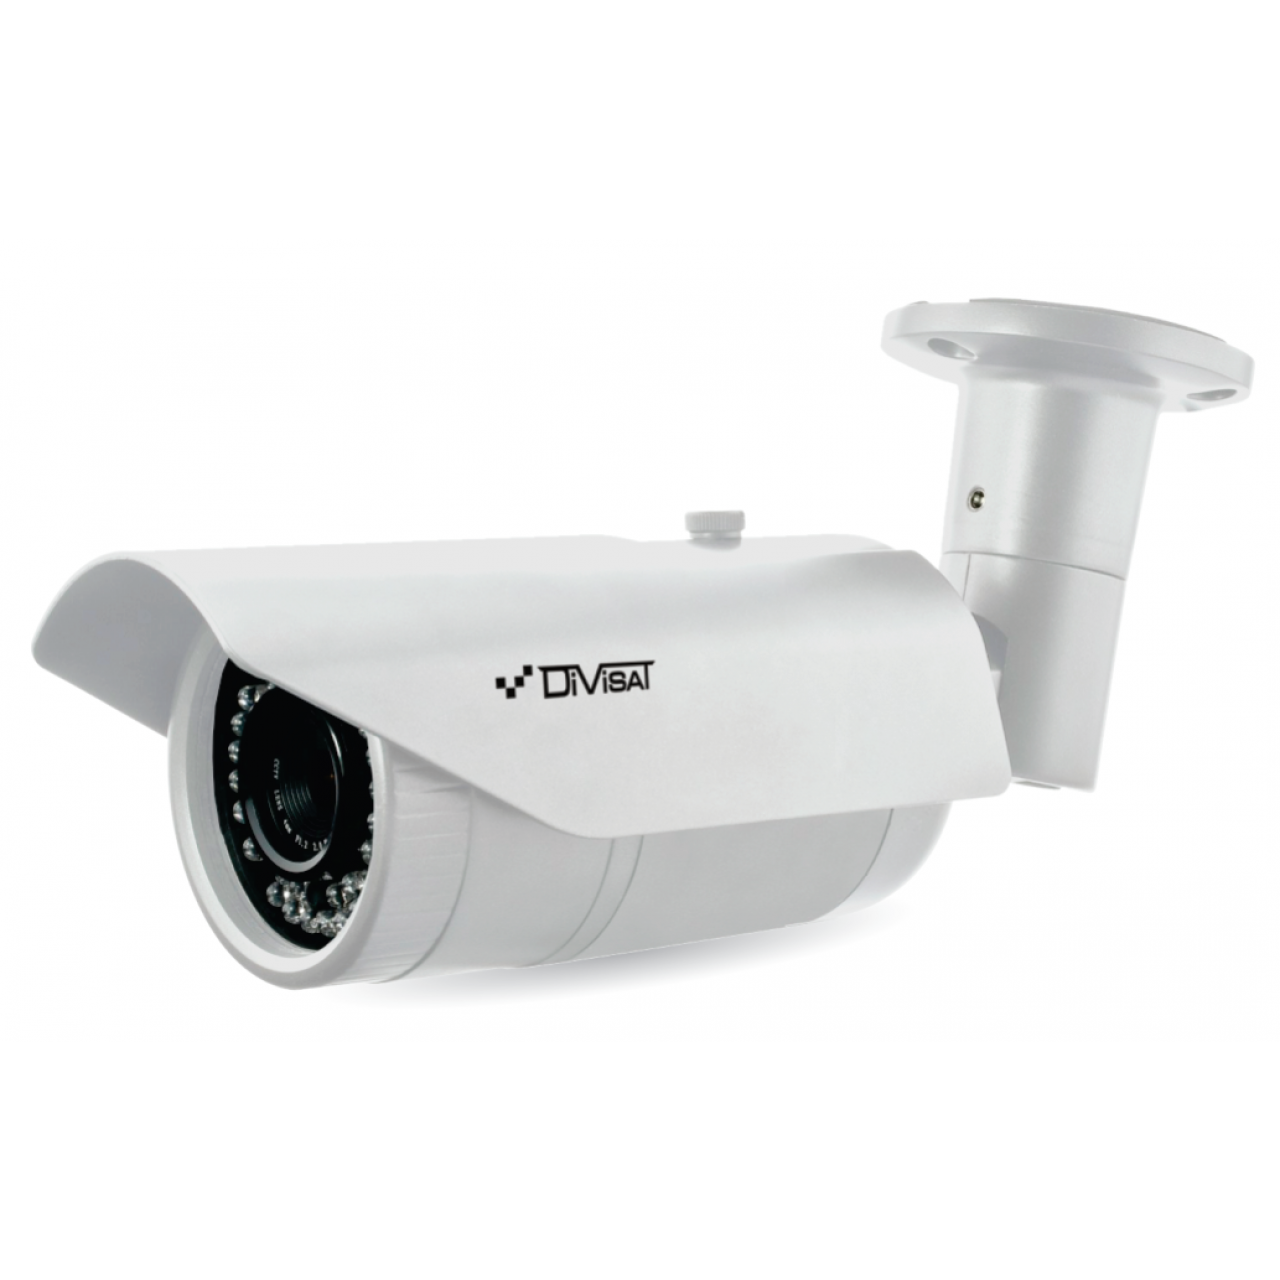 Мультиформатная видеокамера DVC-S692V 2 Mpix 2.8-12mm UTC